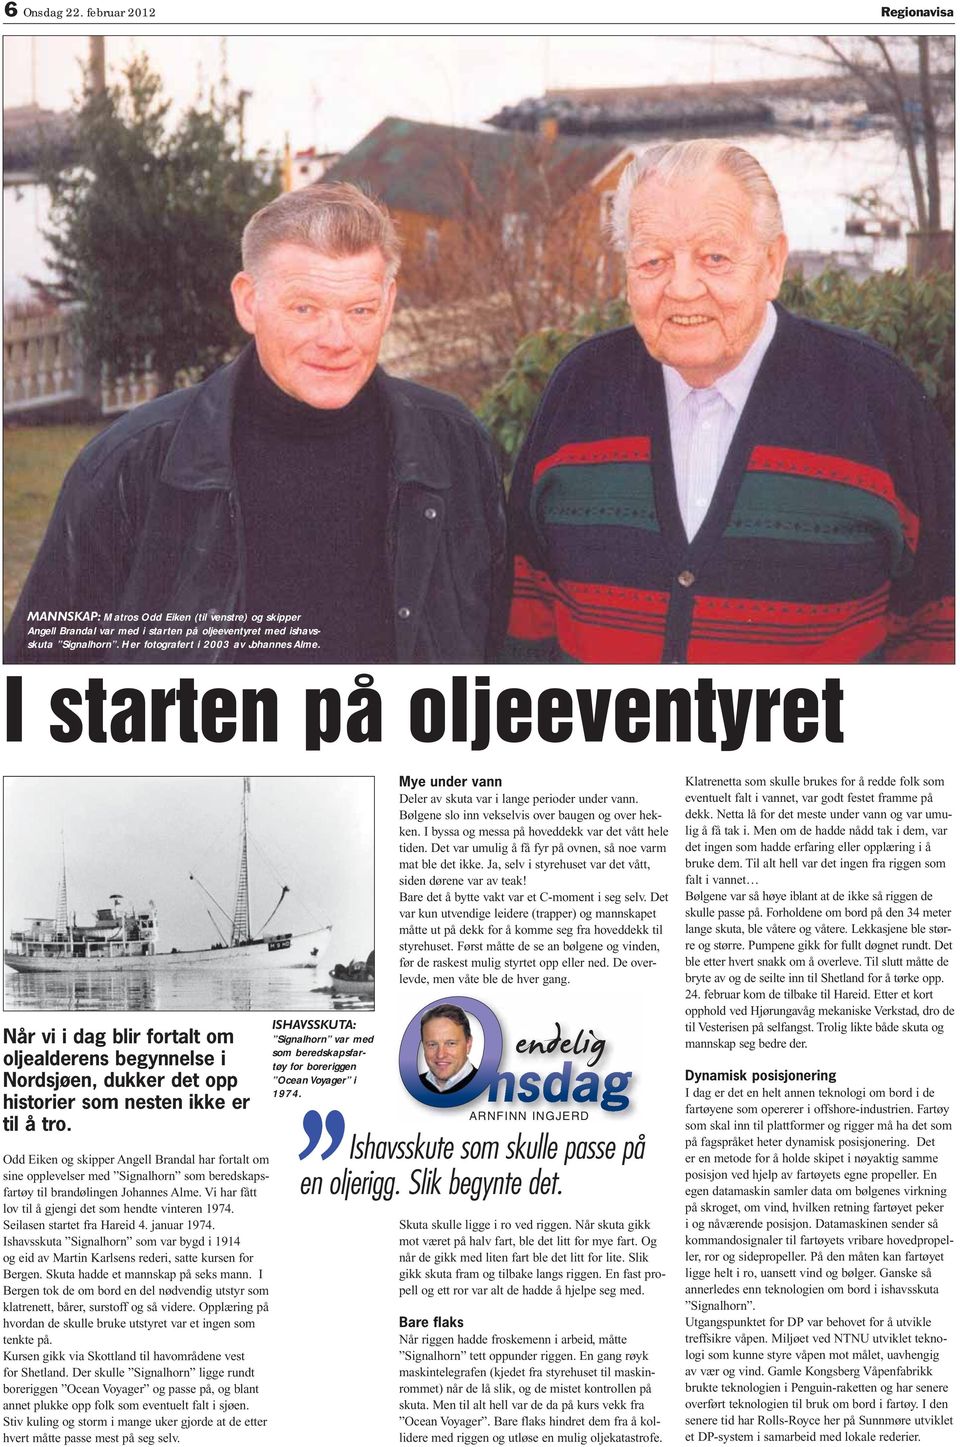 Odd iken og skipper ngell Brandal har fortalt om sine opplevelser med ignalhorn som beredskapsfartøy til brandølingen Johannes lme. Vi har fått lov til å gjengi det som hendte vinteren 1974.